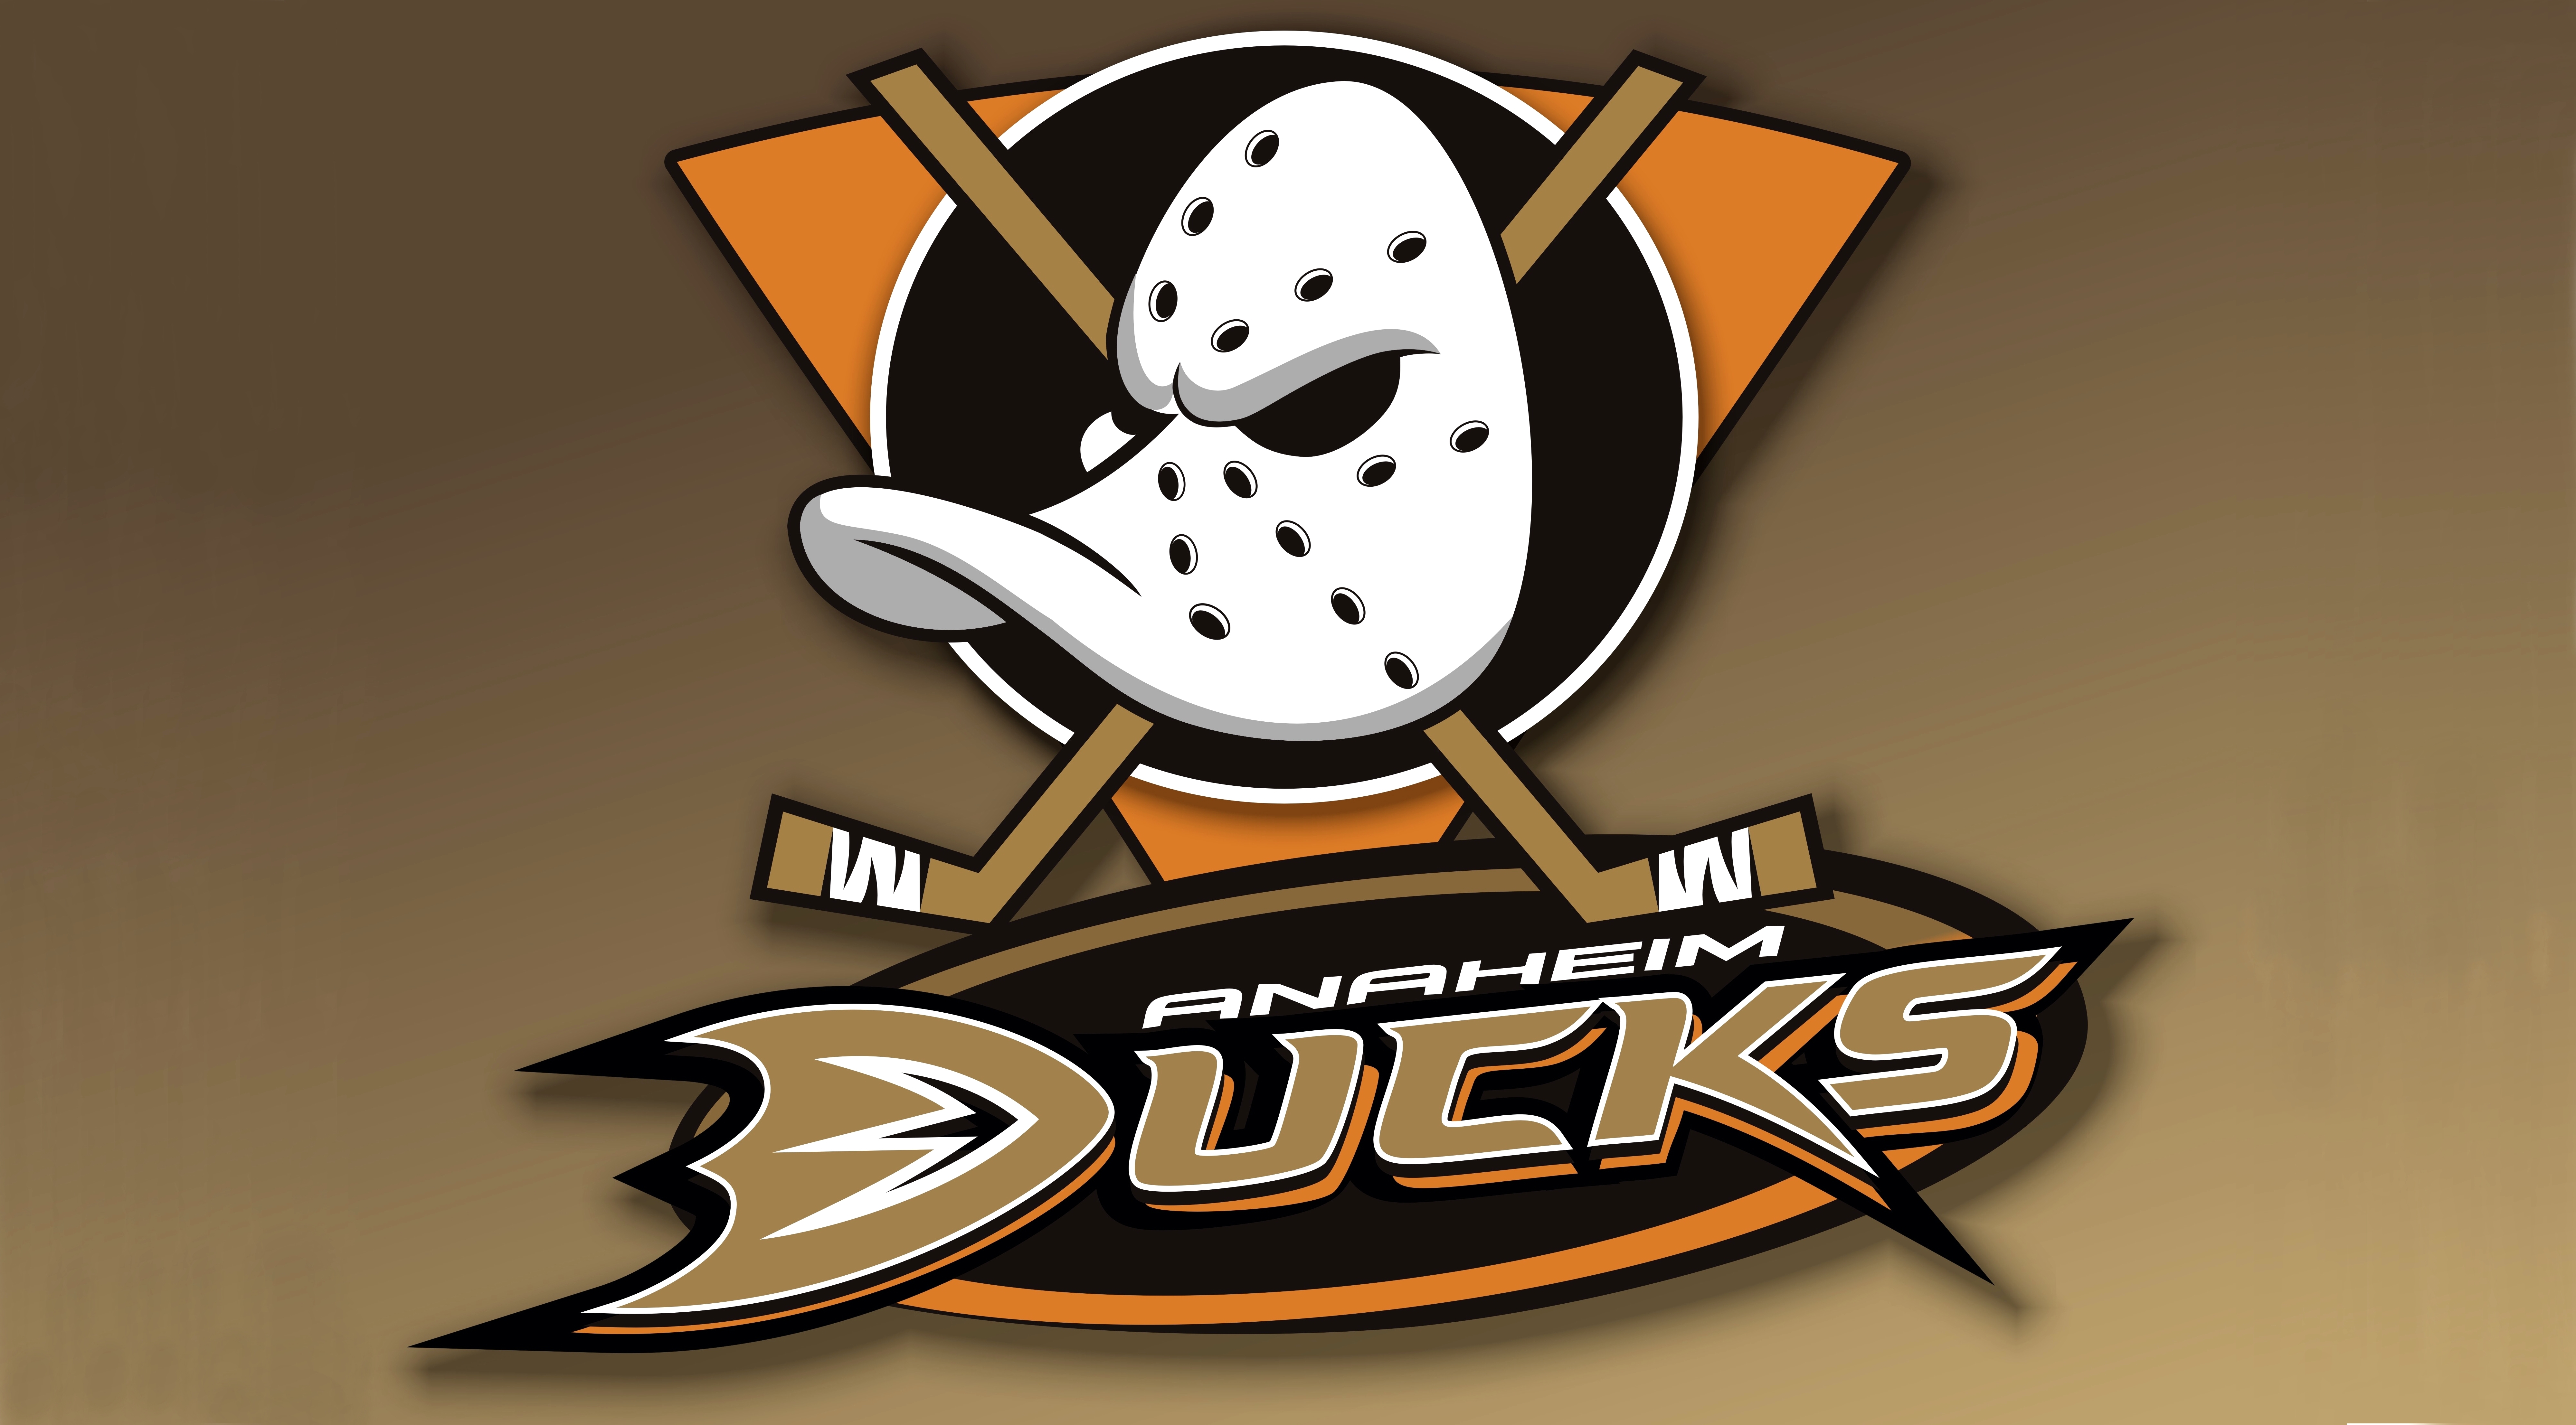 anaheim ducks, sports, emblem, logo, nhl, hockey 4K